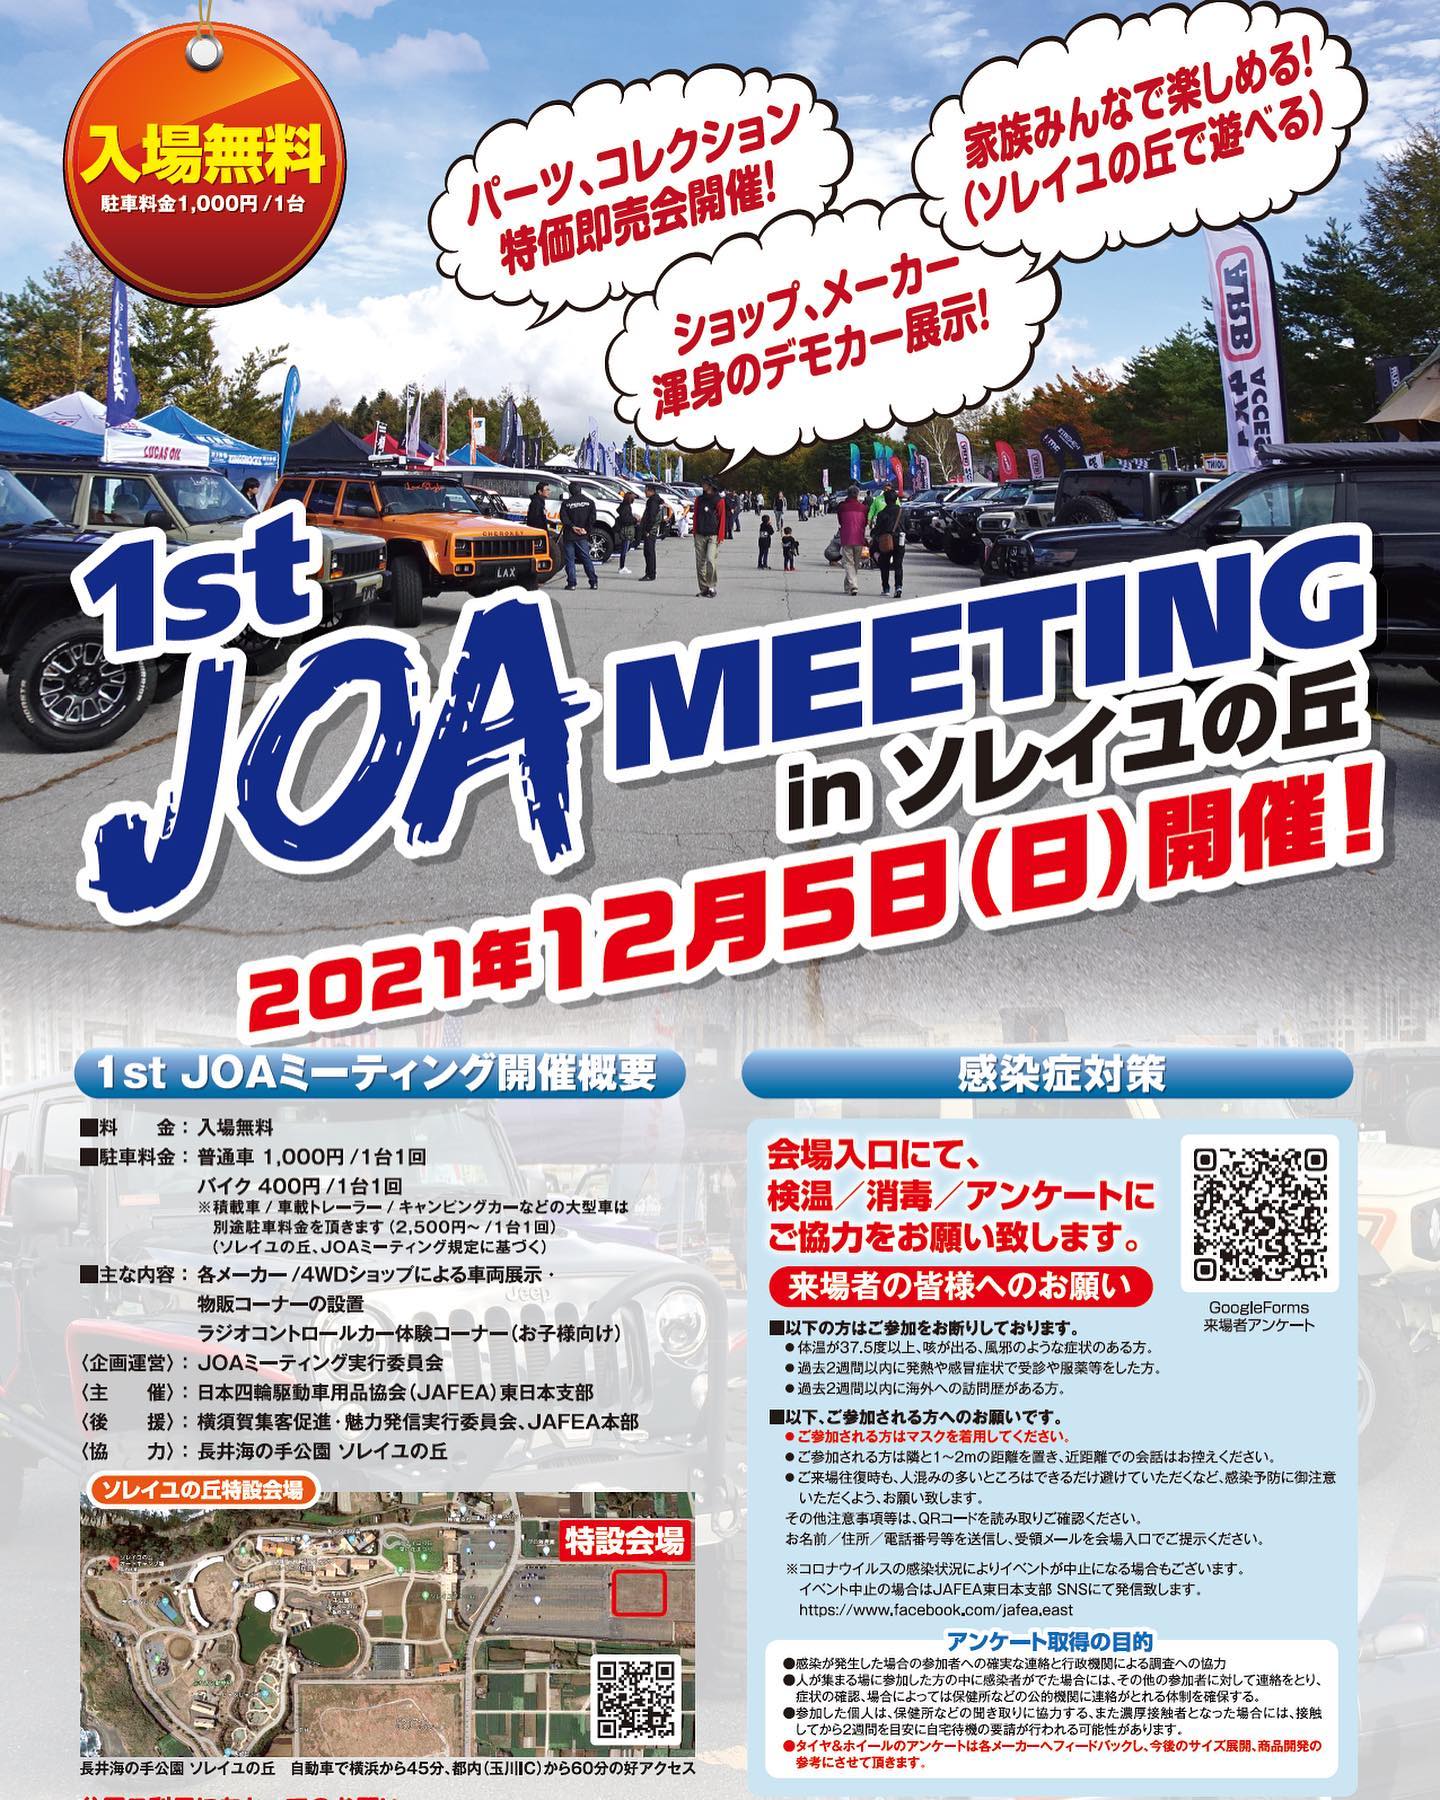 エルフォードが参加する年内最後のイベントのお知らせです。12月５日(日) 神奈川県横須賀市にある長井海の手公園 ソレイユの丘 に全国の有名4WDメーカー、ショップが大集合します。デモカー展示はもちろん各社物販もありますので年内に手に入れときたい物等あったら是非会場に遊びに来てください✩.*˚ #Jeep #ラングラー #jl #elford #ジープ #wrangler #suv #4wd #unlimited #アンリミテッド #sahara #サハラ #rubicon #launchedition #エルフォード #ルビコン#toyota #lexus #prado #lx570 #gx #lc #ランクル #レクサス #トヨタ #プラド150 #ソニックアート #ソレイユの丘